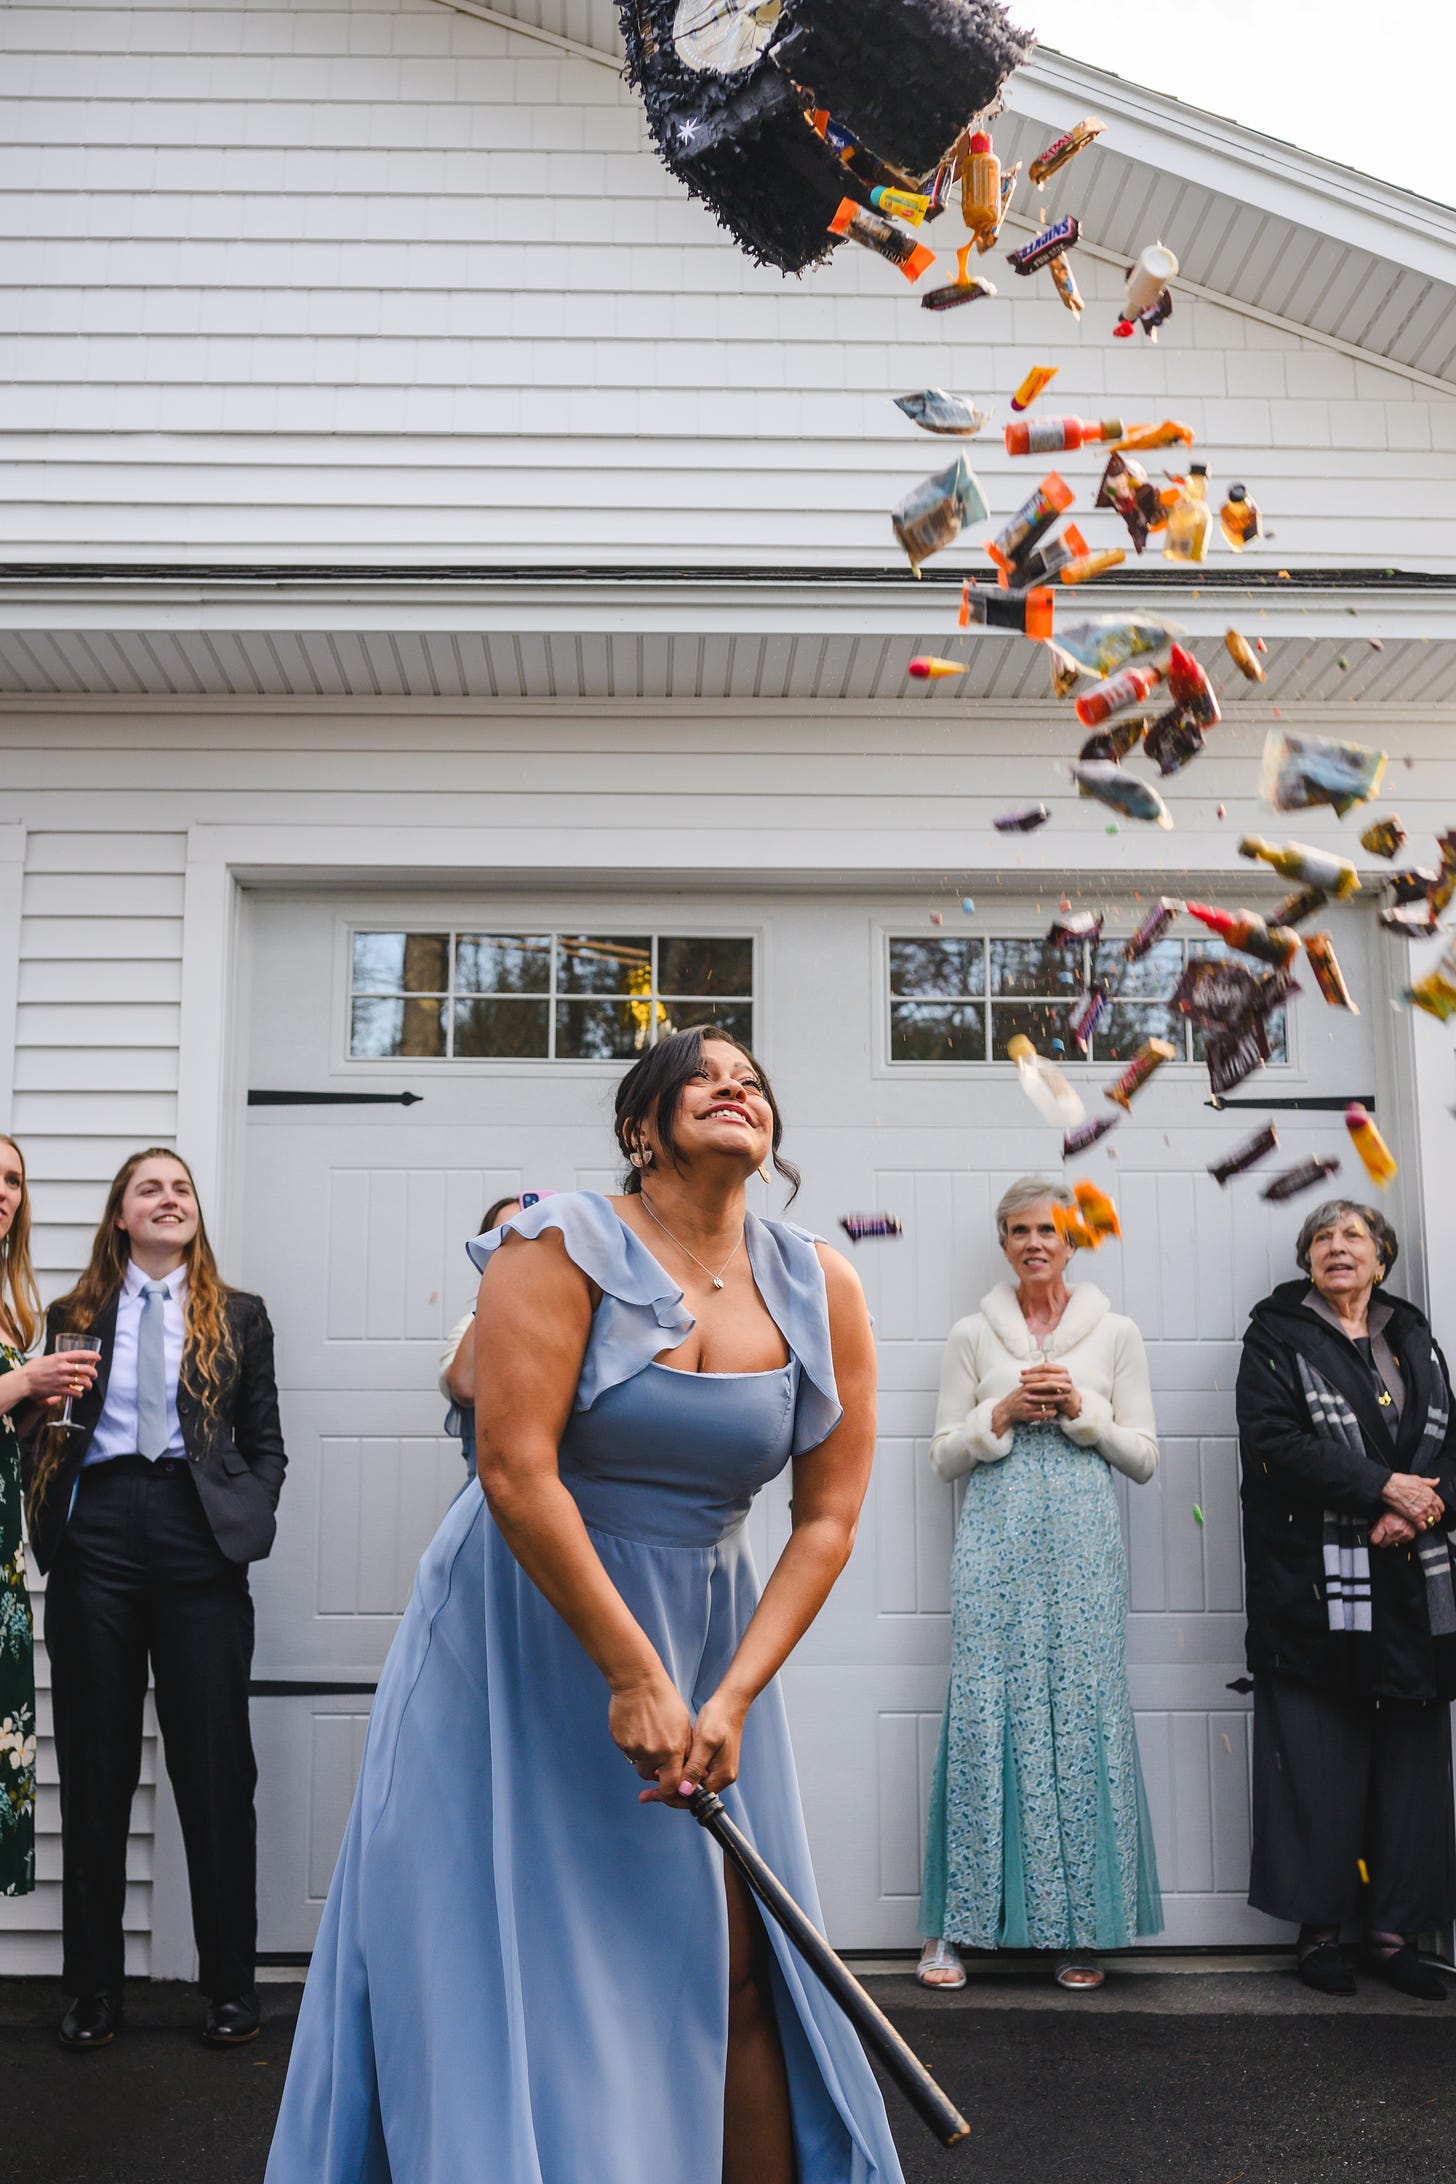 A bridesmaid smashing open a piñata